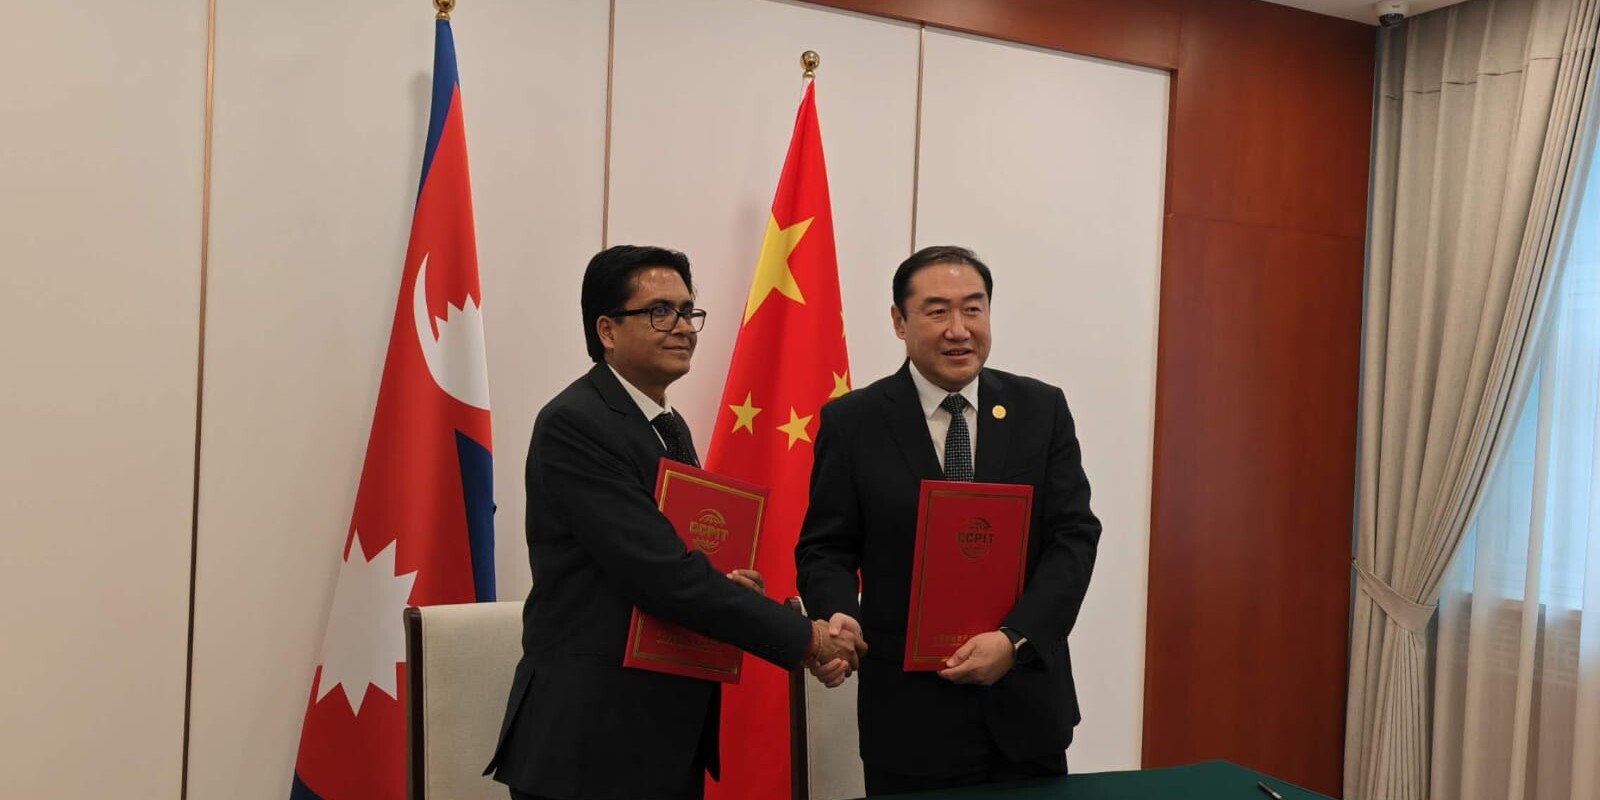 नेपाल–चीन व्यवसाय परिषद् (Nepal China Business Council) स्थापना गर्न नेपाल उद्योग परिसंघ र सीसीपीआईटीबीच समझदारी